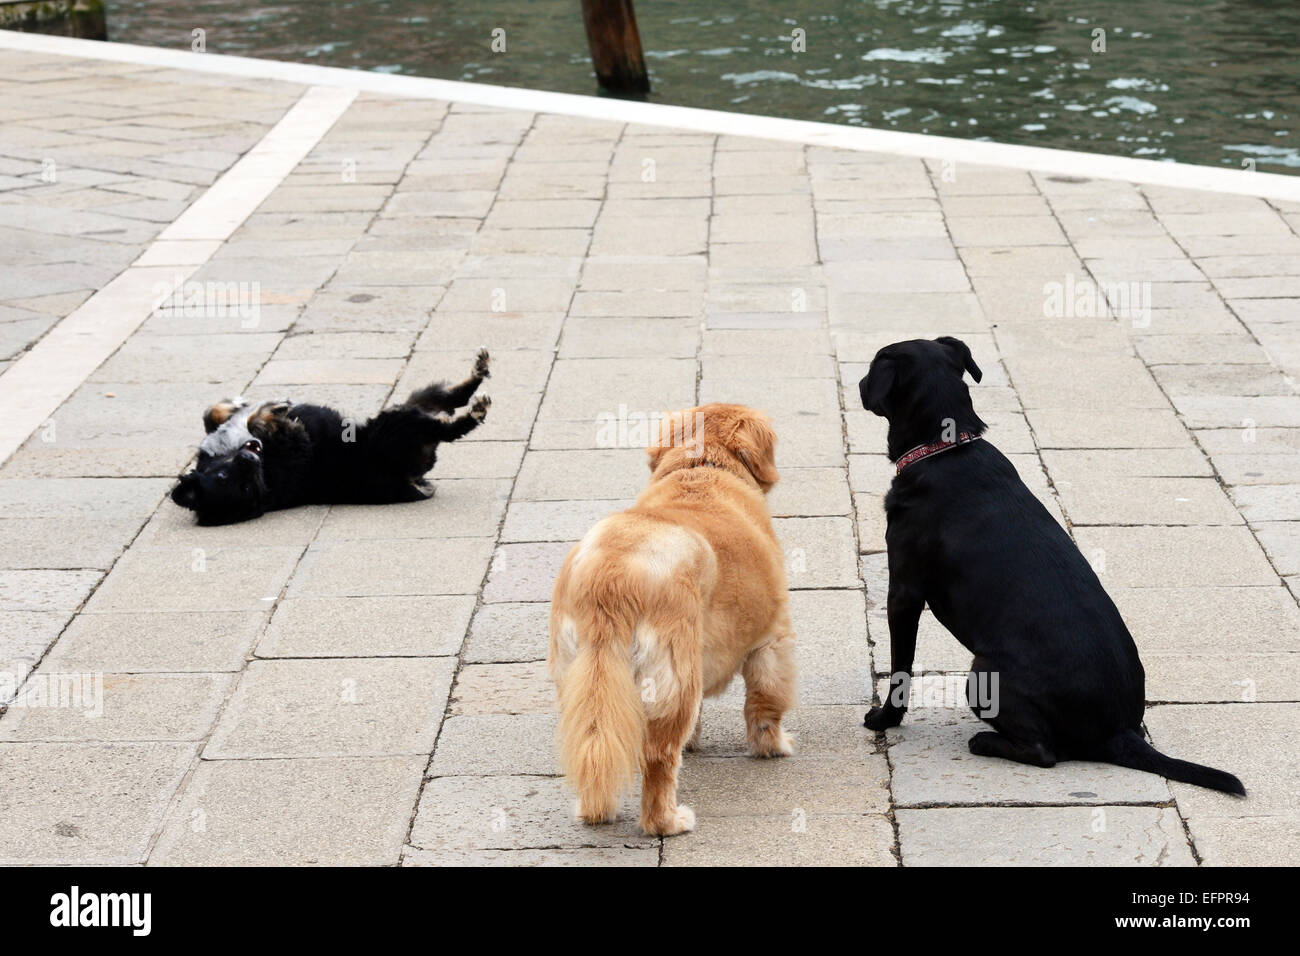 Dog friends, Venice Italy Stock Photo